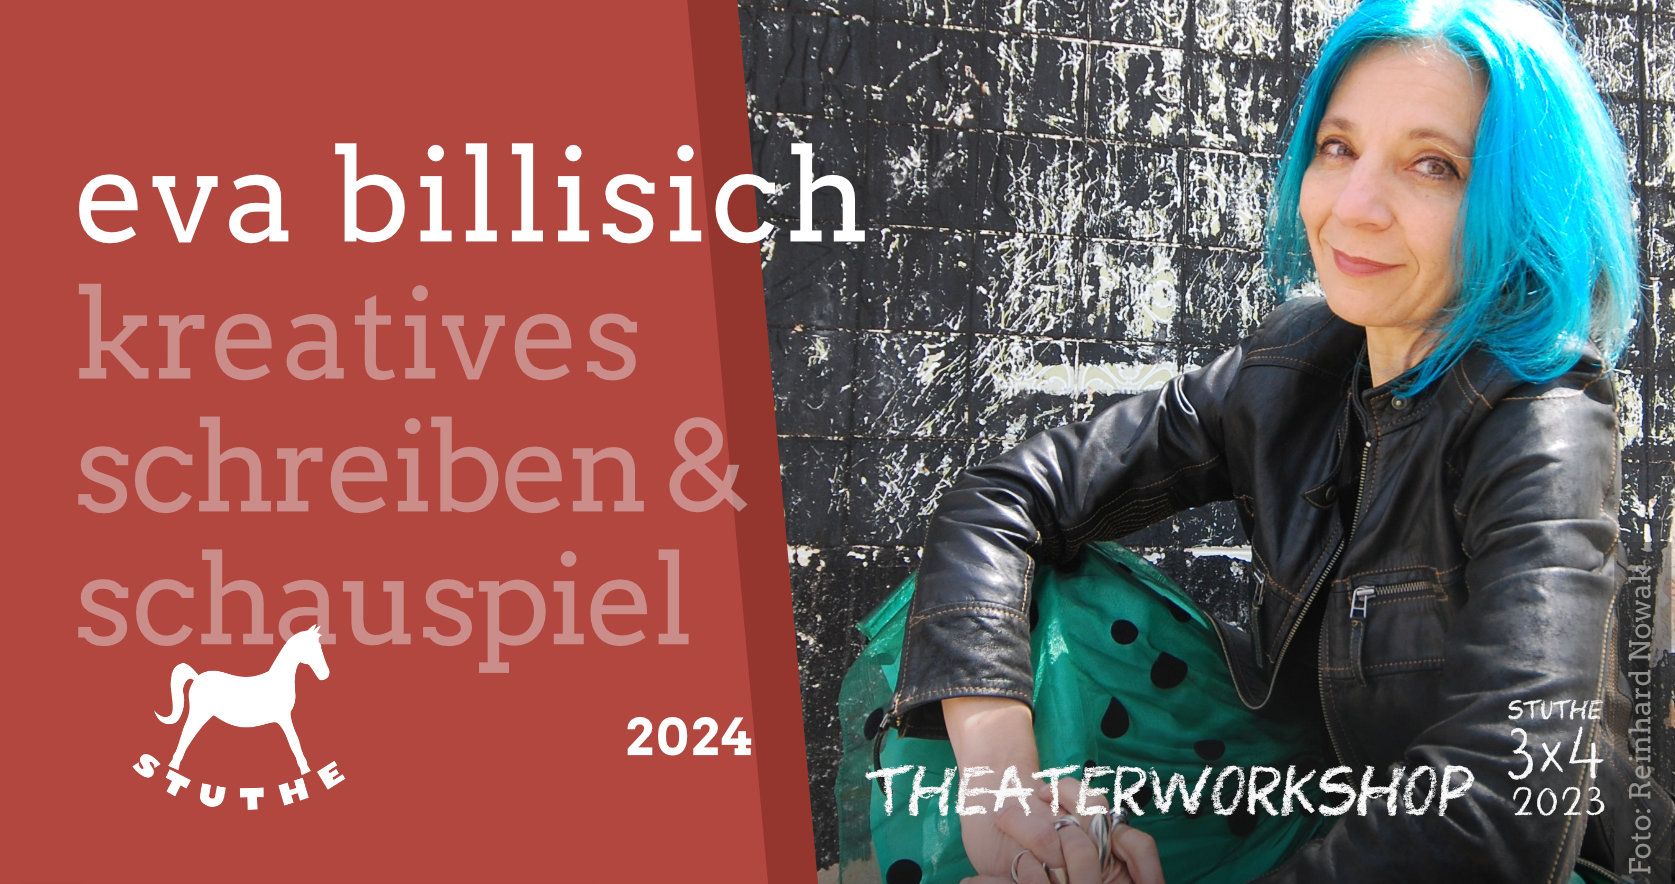 STUTHE Profi-Workshop 2023 mit Eva Billisich